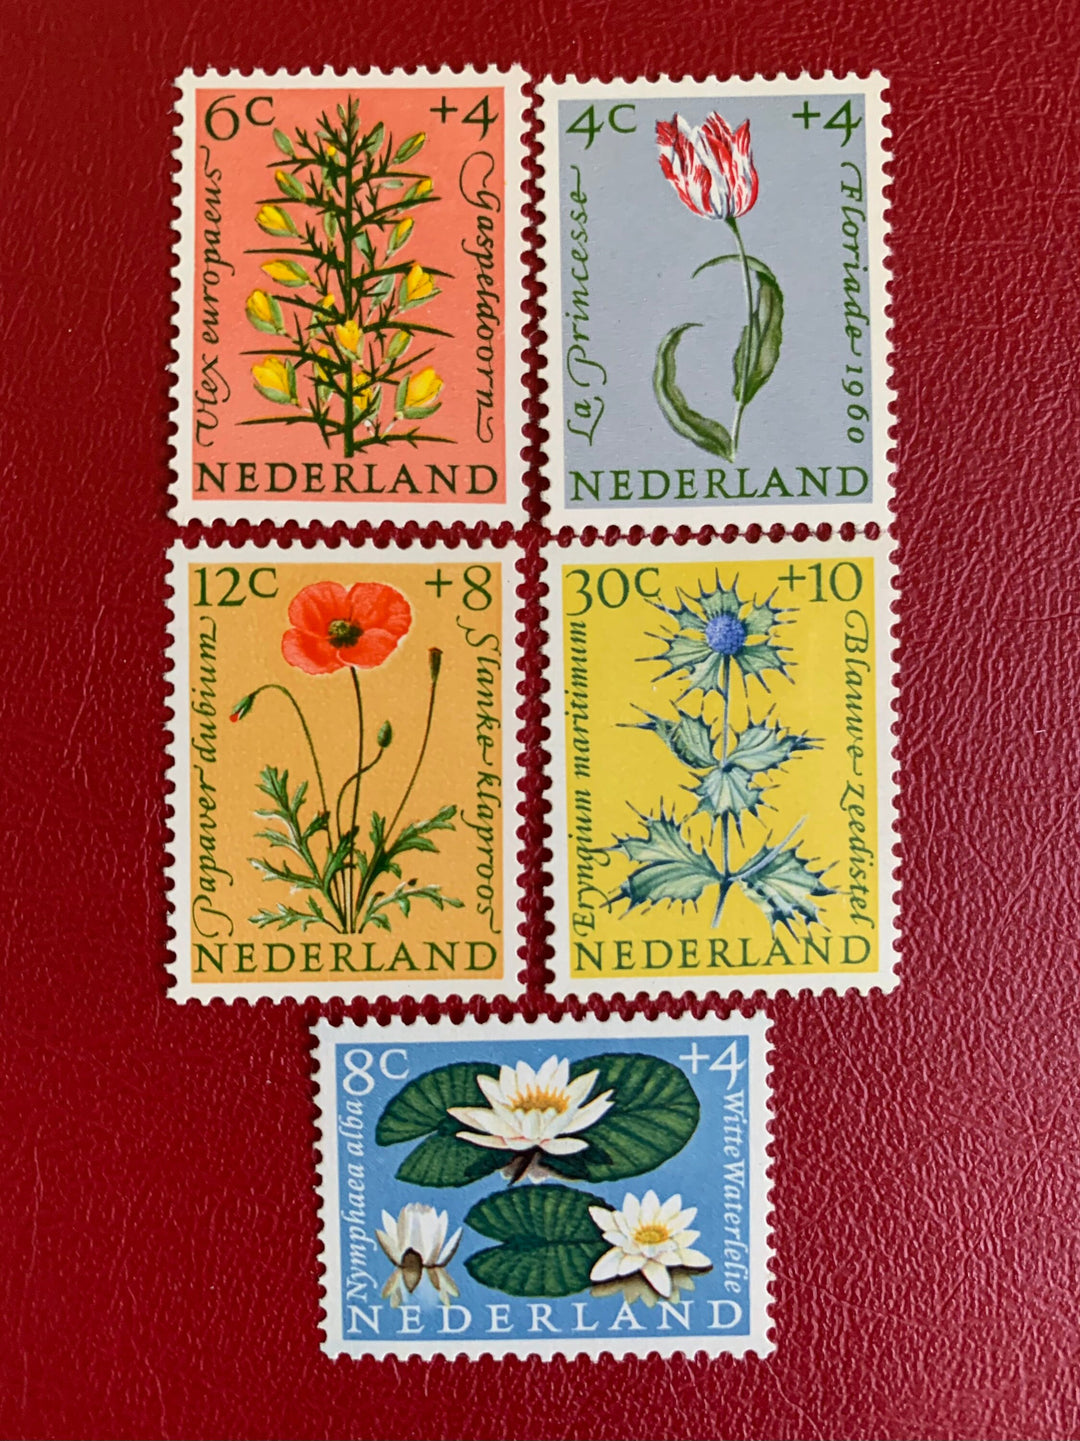 Netherlands - Original Vintage Postage Stamps- 1960 Florals - for the collector, artist or crafter